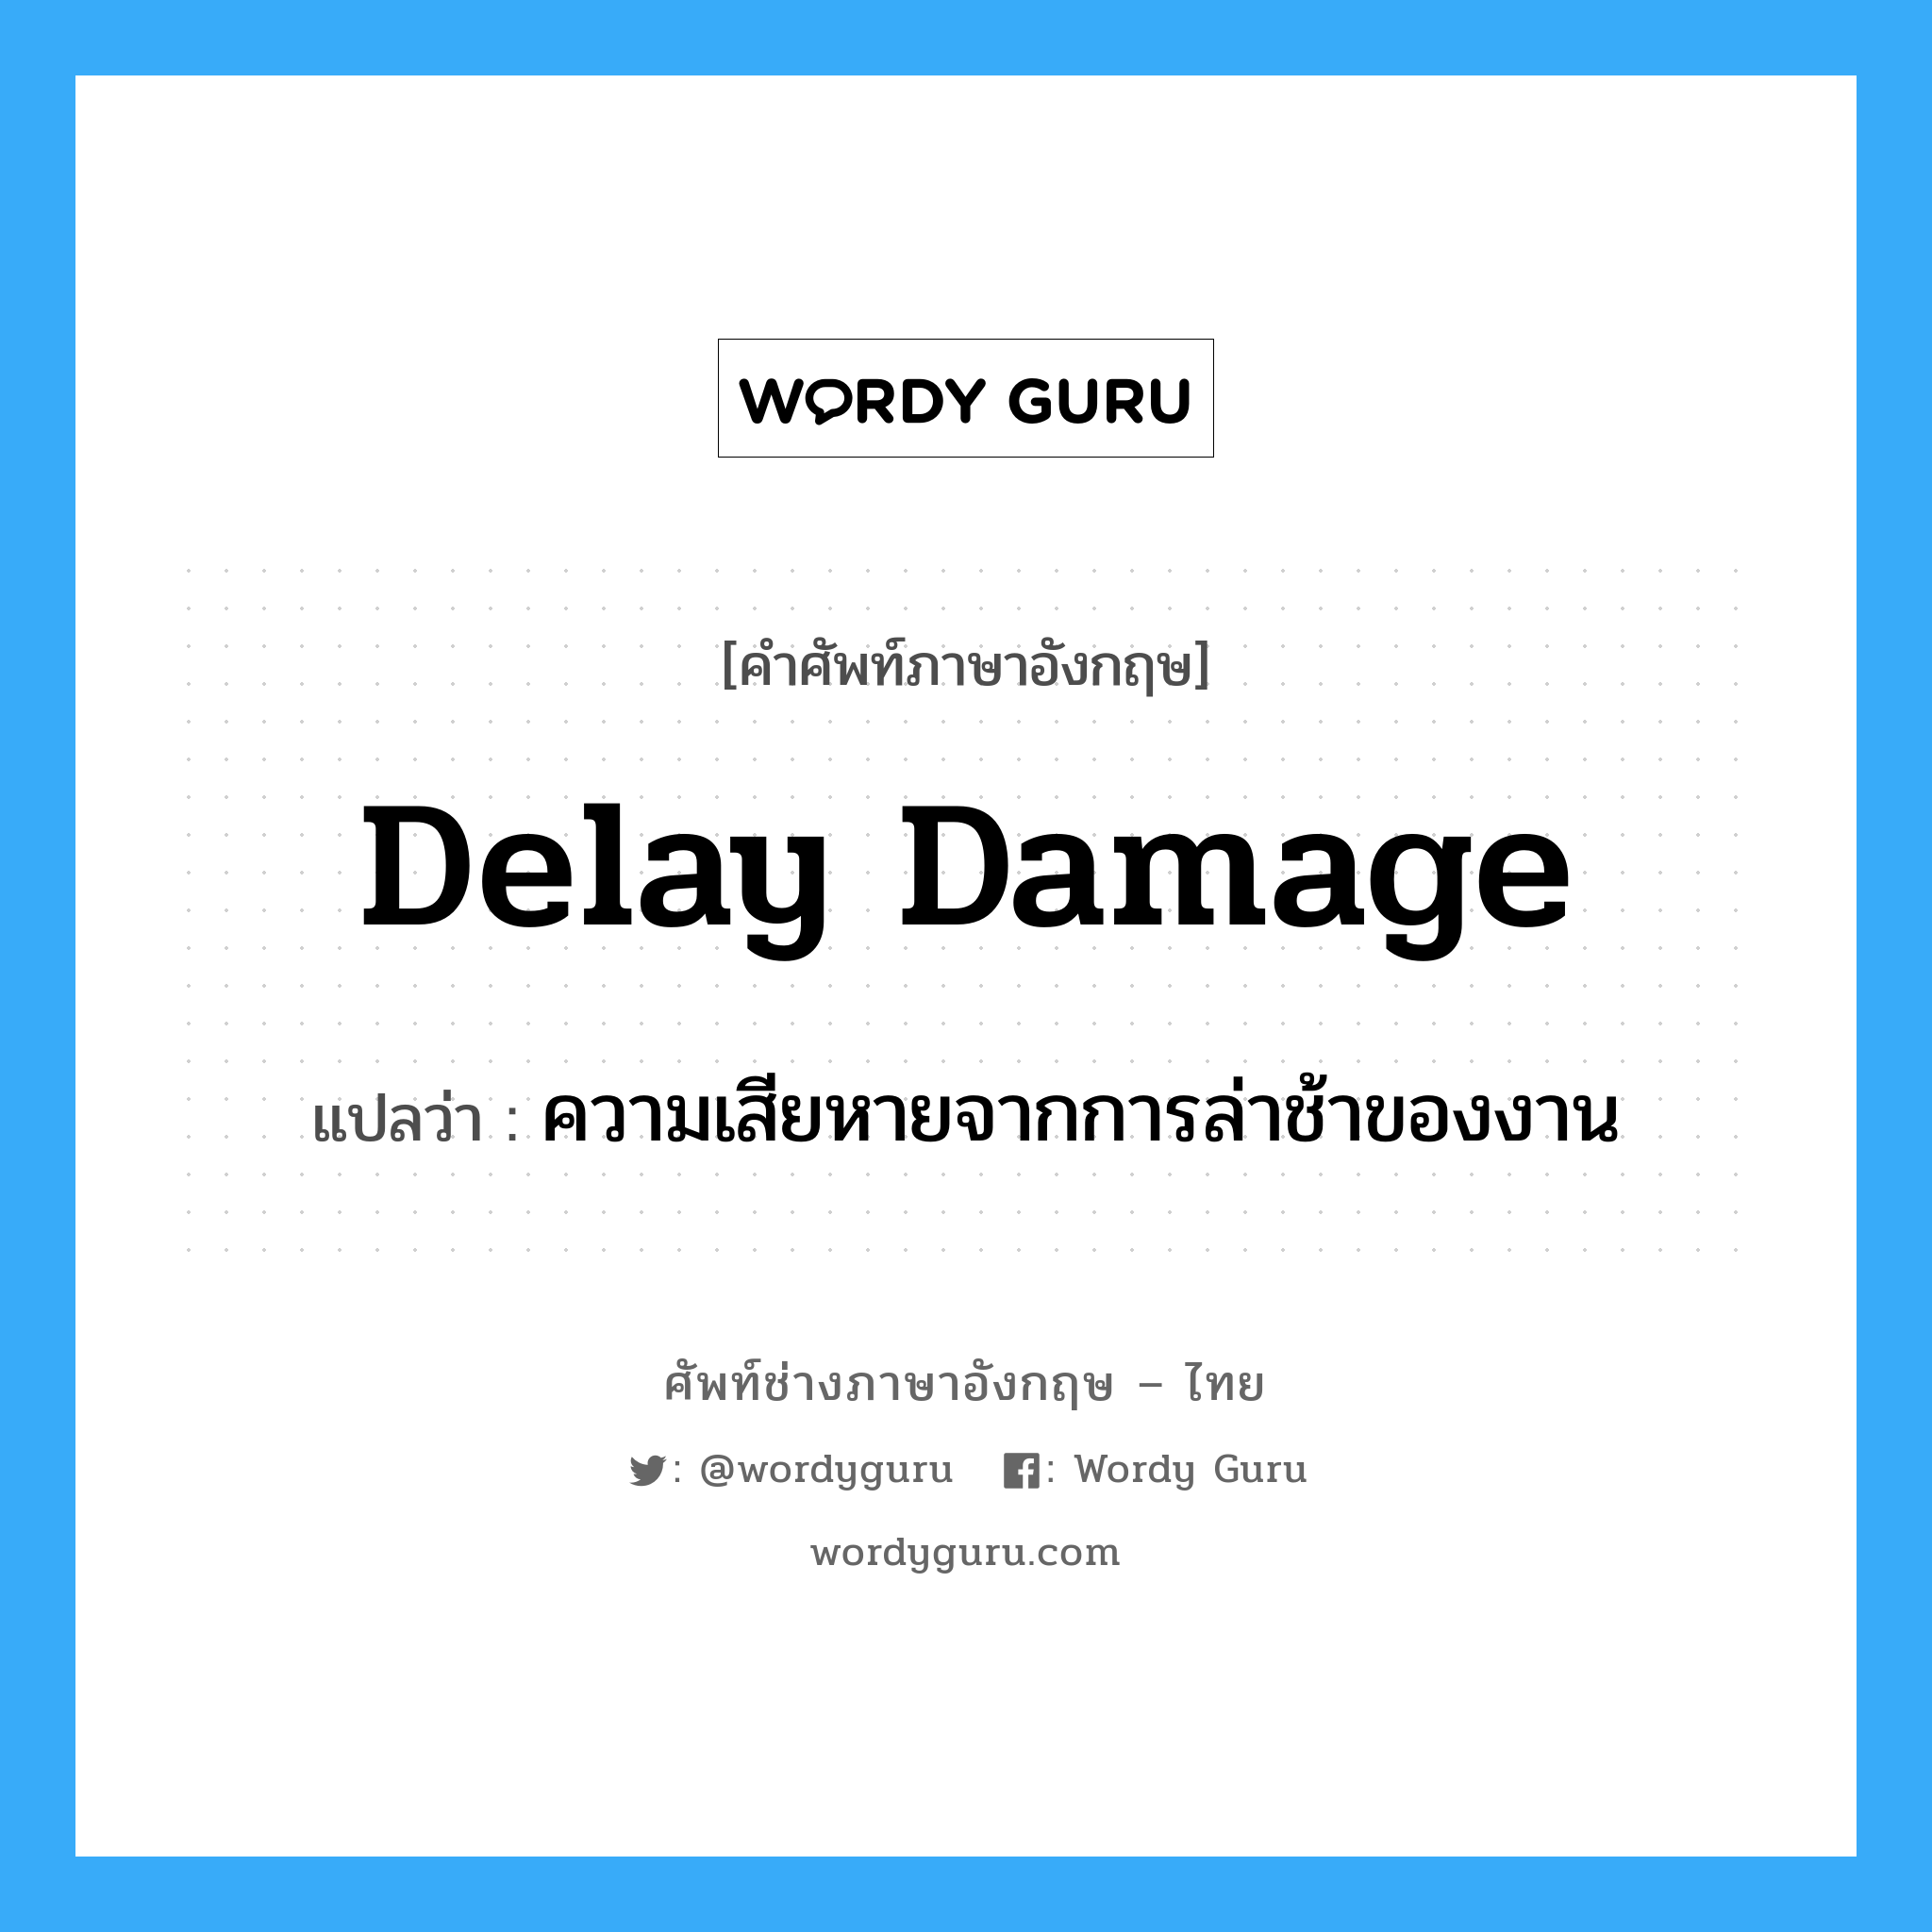 Delay Damage แปลว่า?, คำศัพท์ช่างภาษาอังกฤษ - ไทย Delay Damage คำศัพท์ภาษาอังกฤษ Delay Damage แปลว่า ความเสียหายจากการล่าช้าของงาน